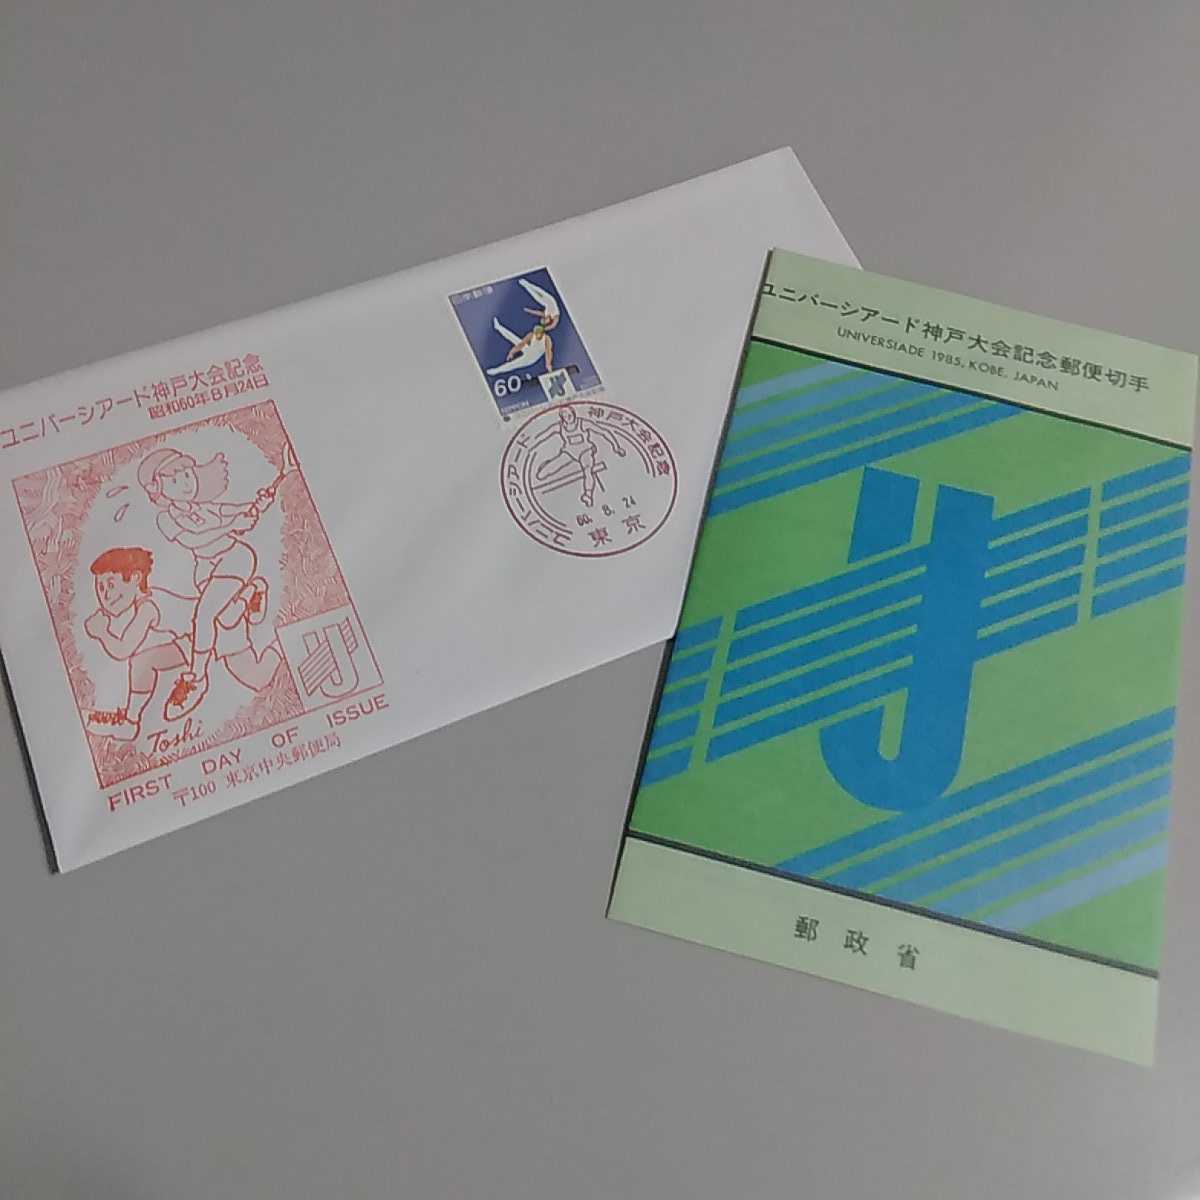 1　初日カバー　First day Cover東京中央郵便局 ユニバーシアード神戸大会記念　昭和60年_画像1